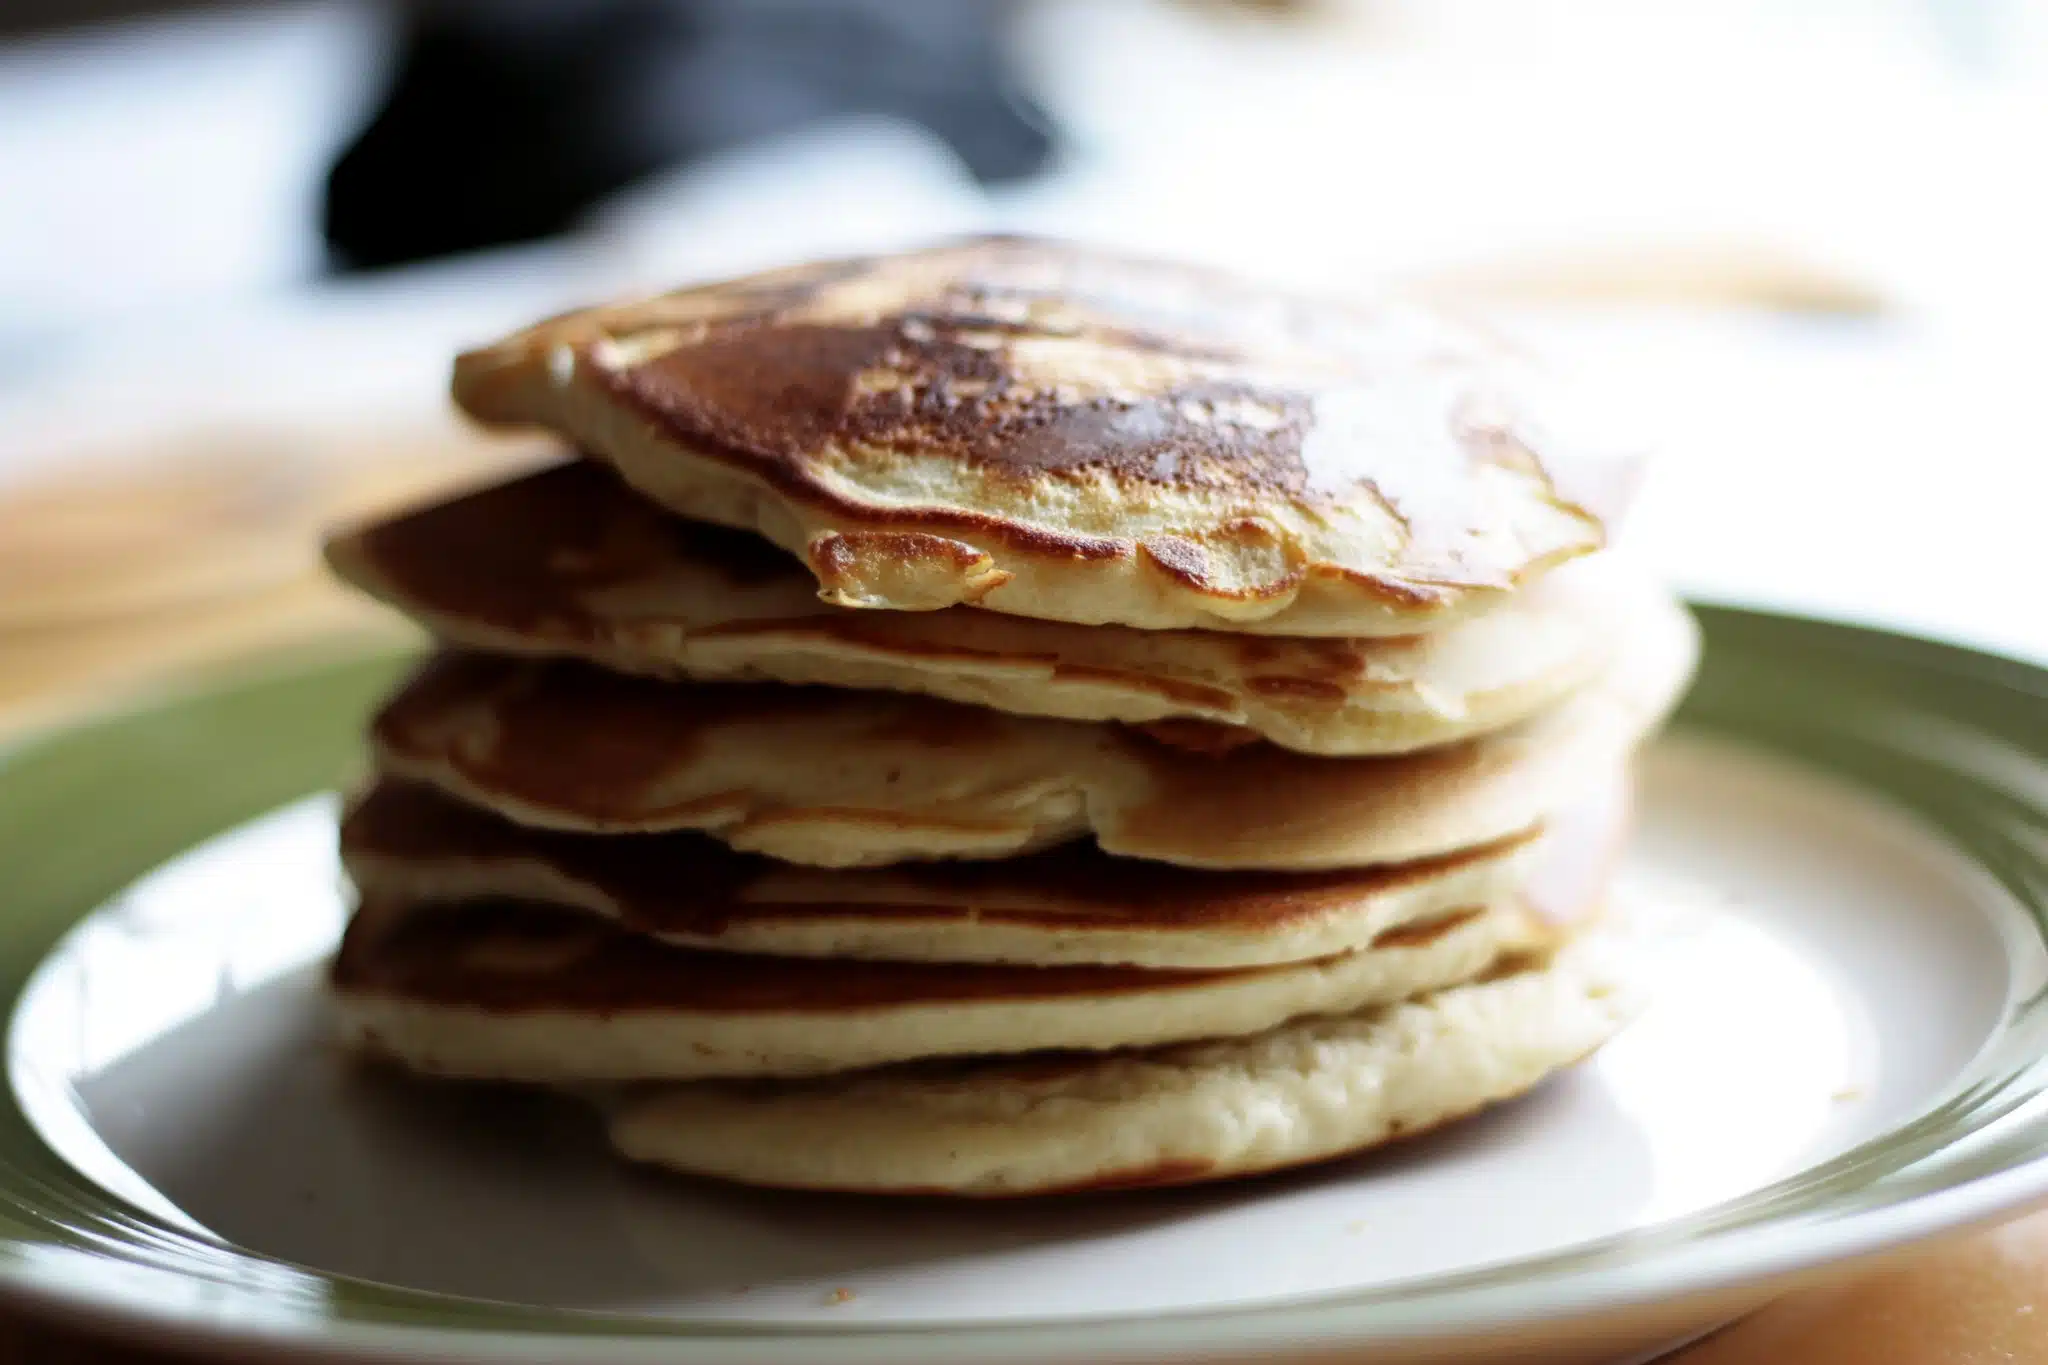 Recette de pancake aux flocons d’avoine : une alternative saine et délicieuse